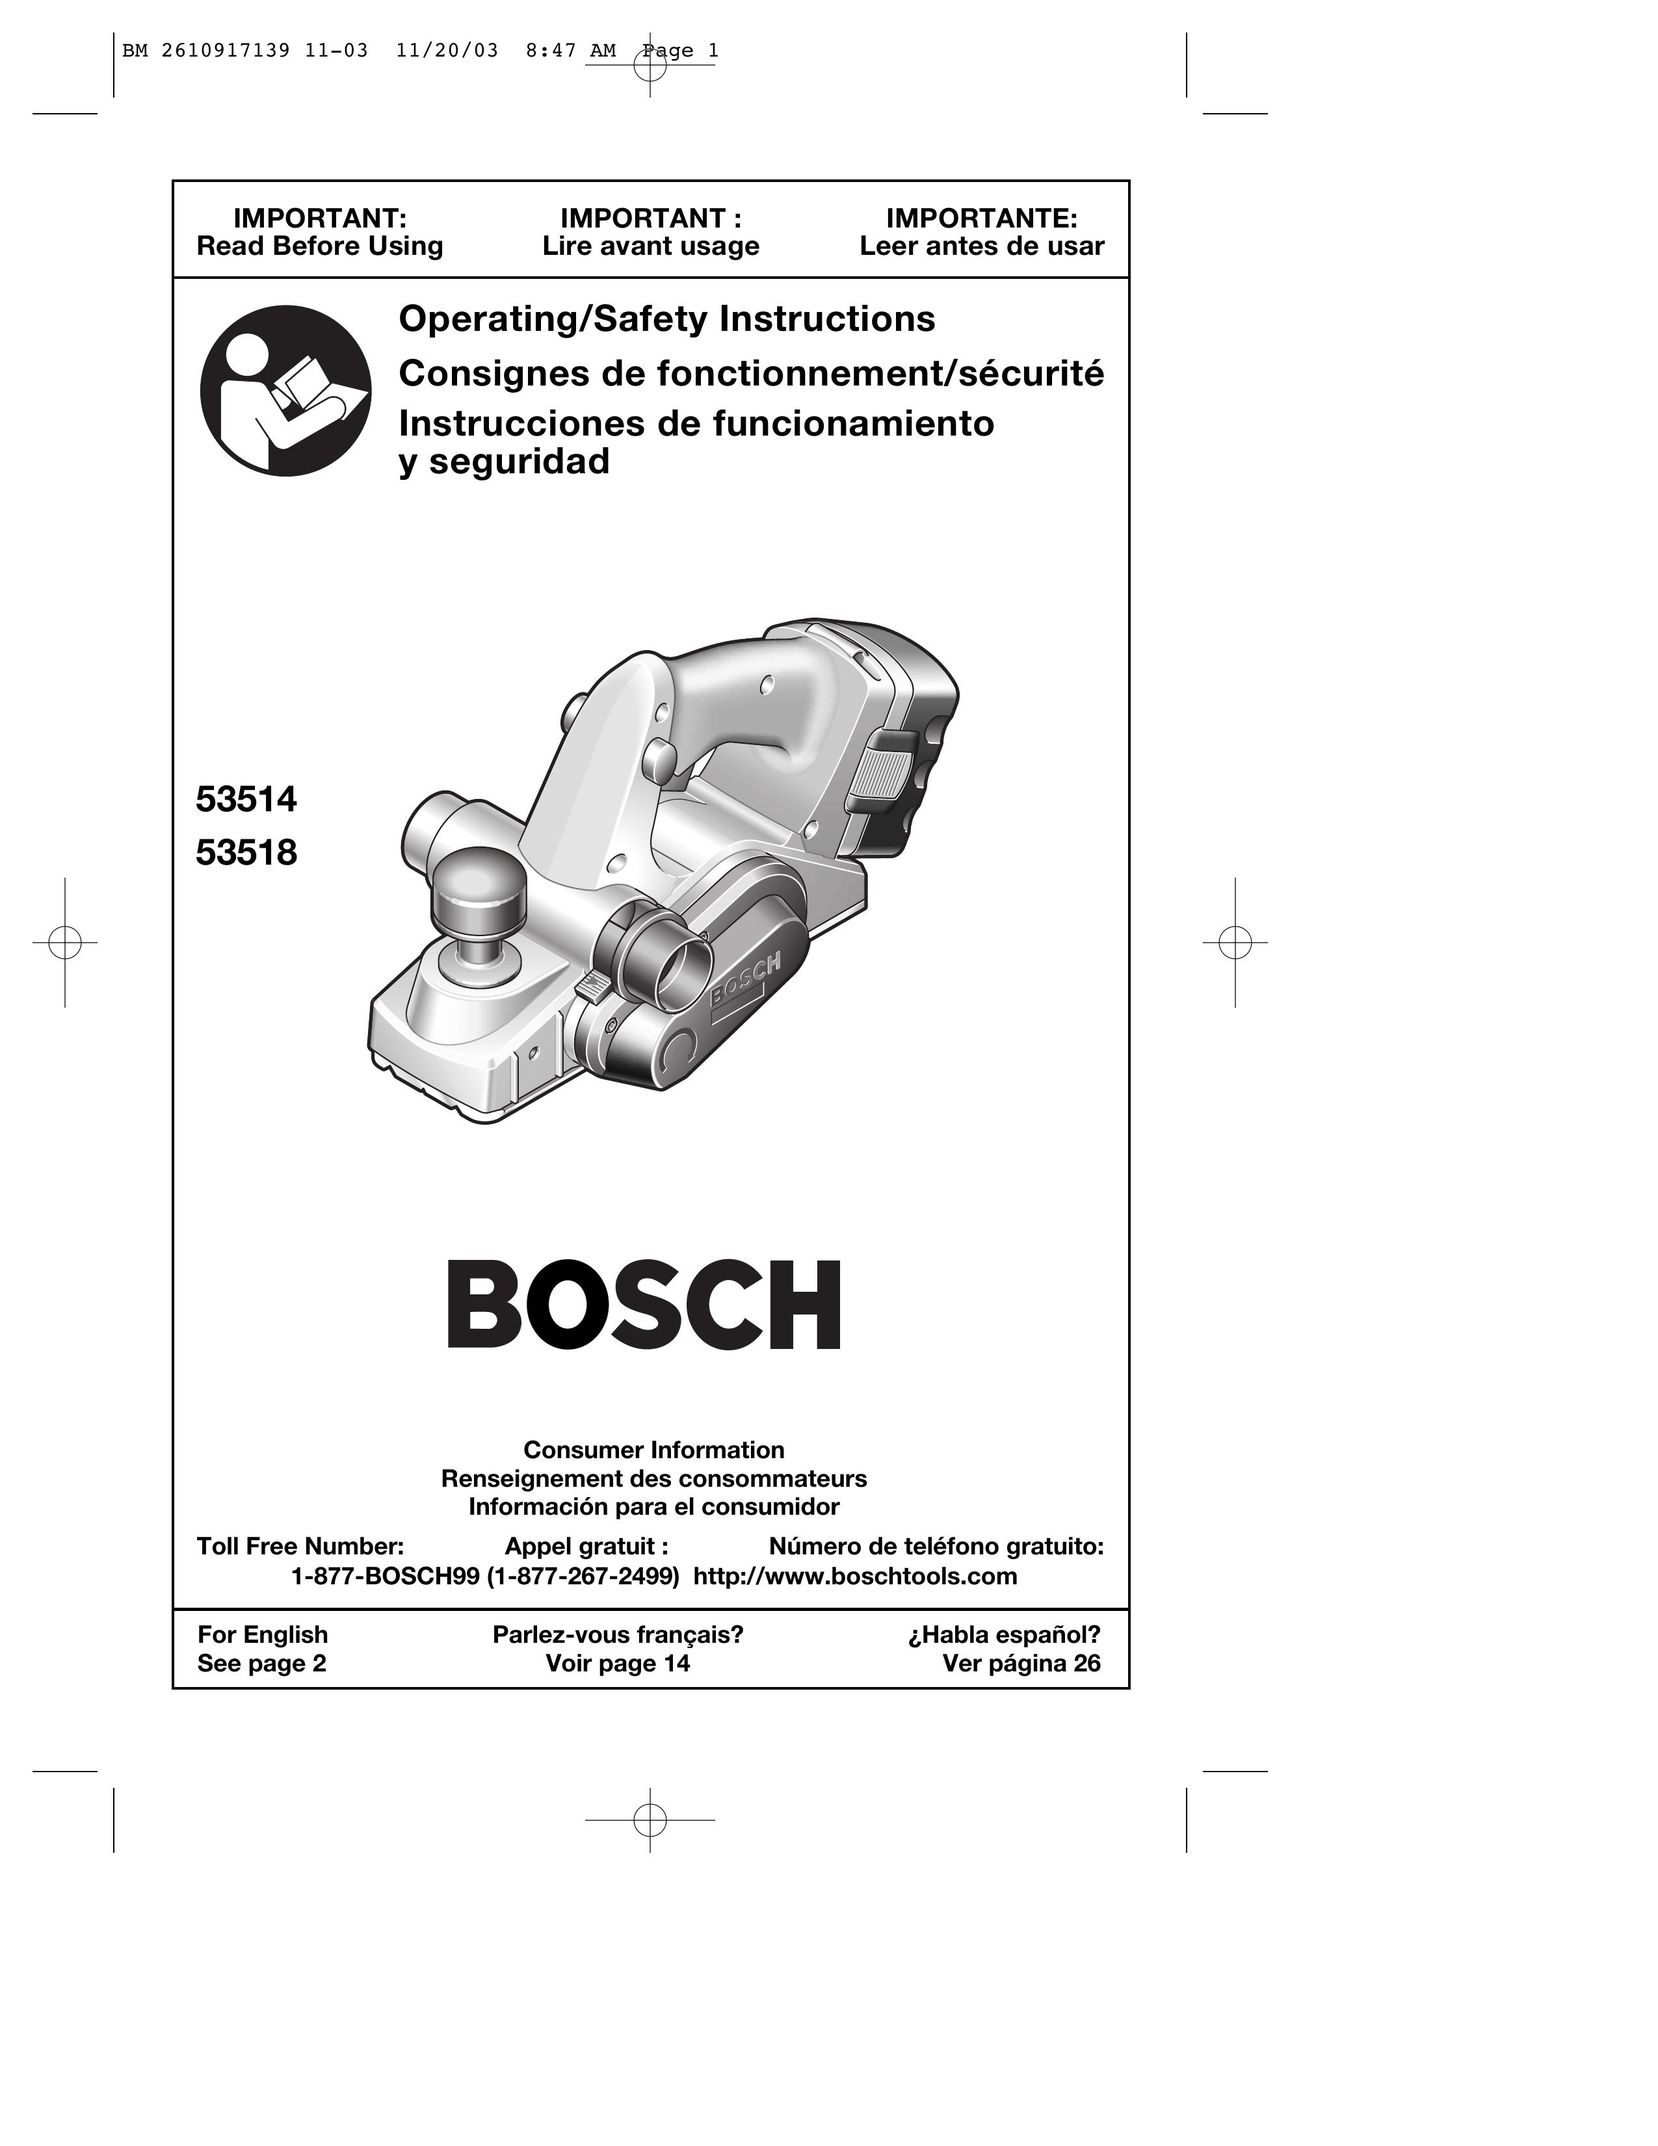 Bosch Power Tools 53518 Planer User Manual